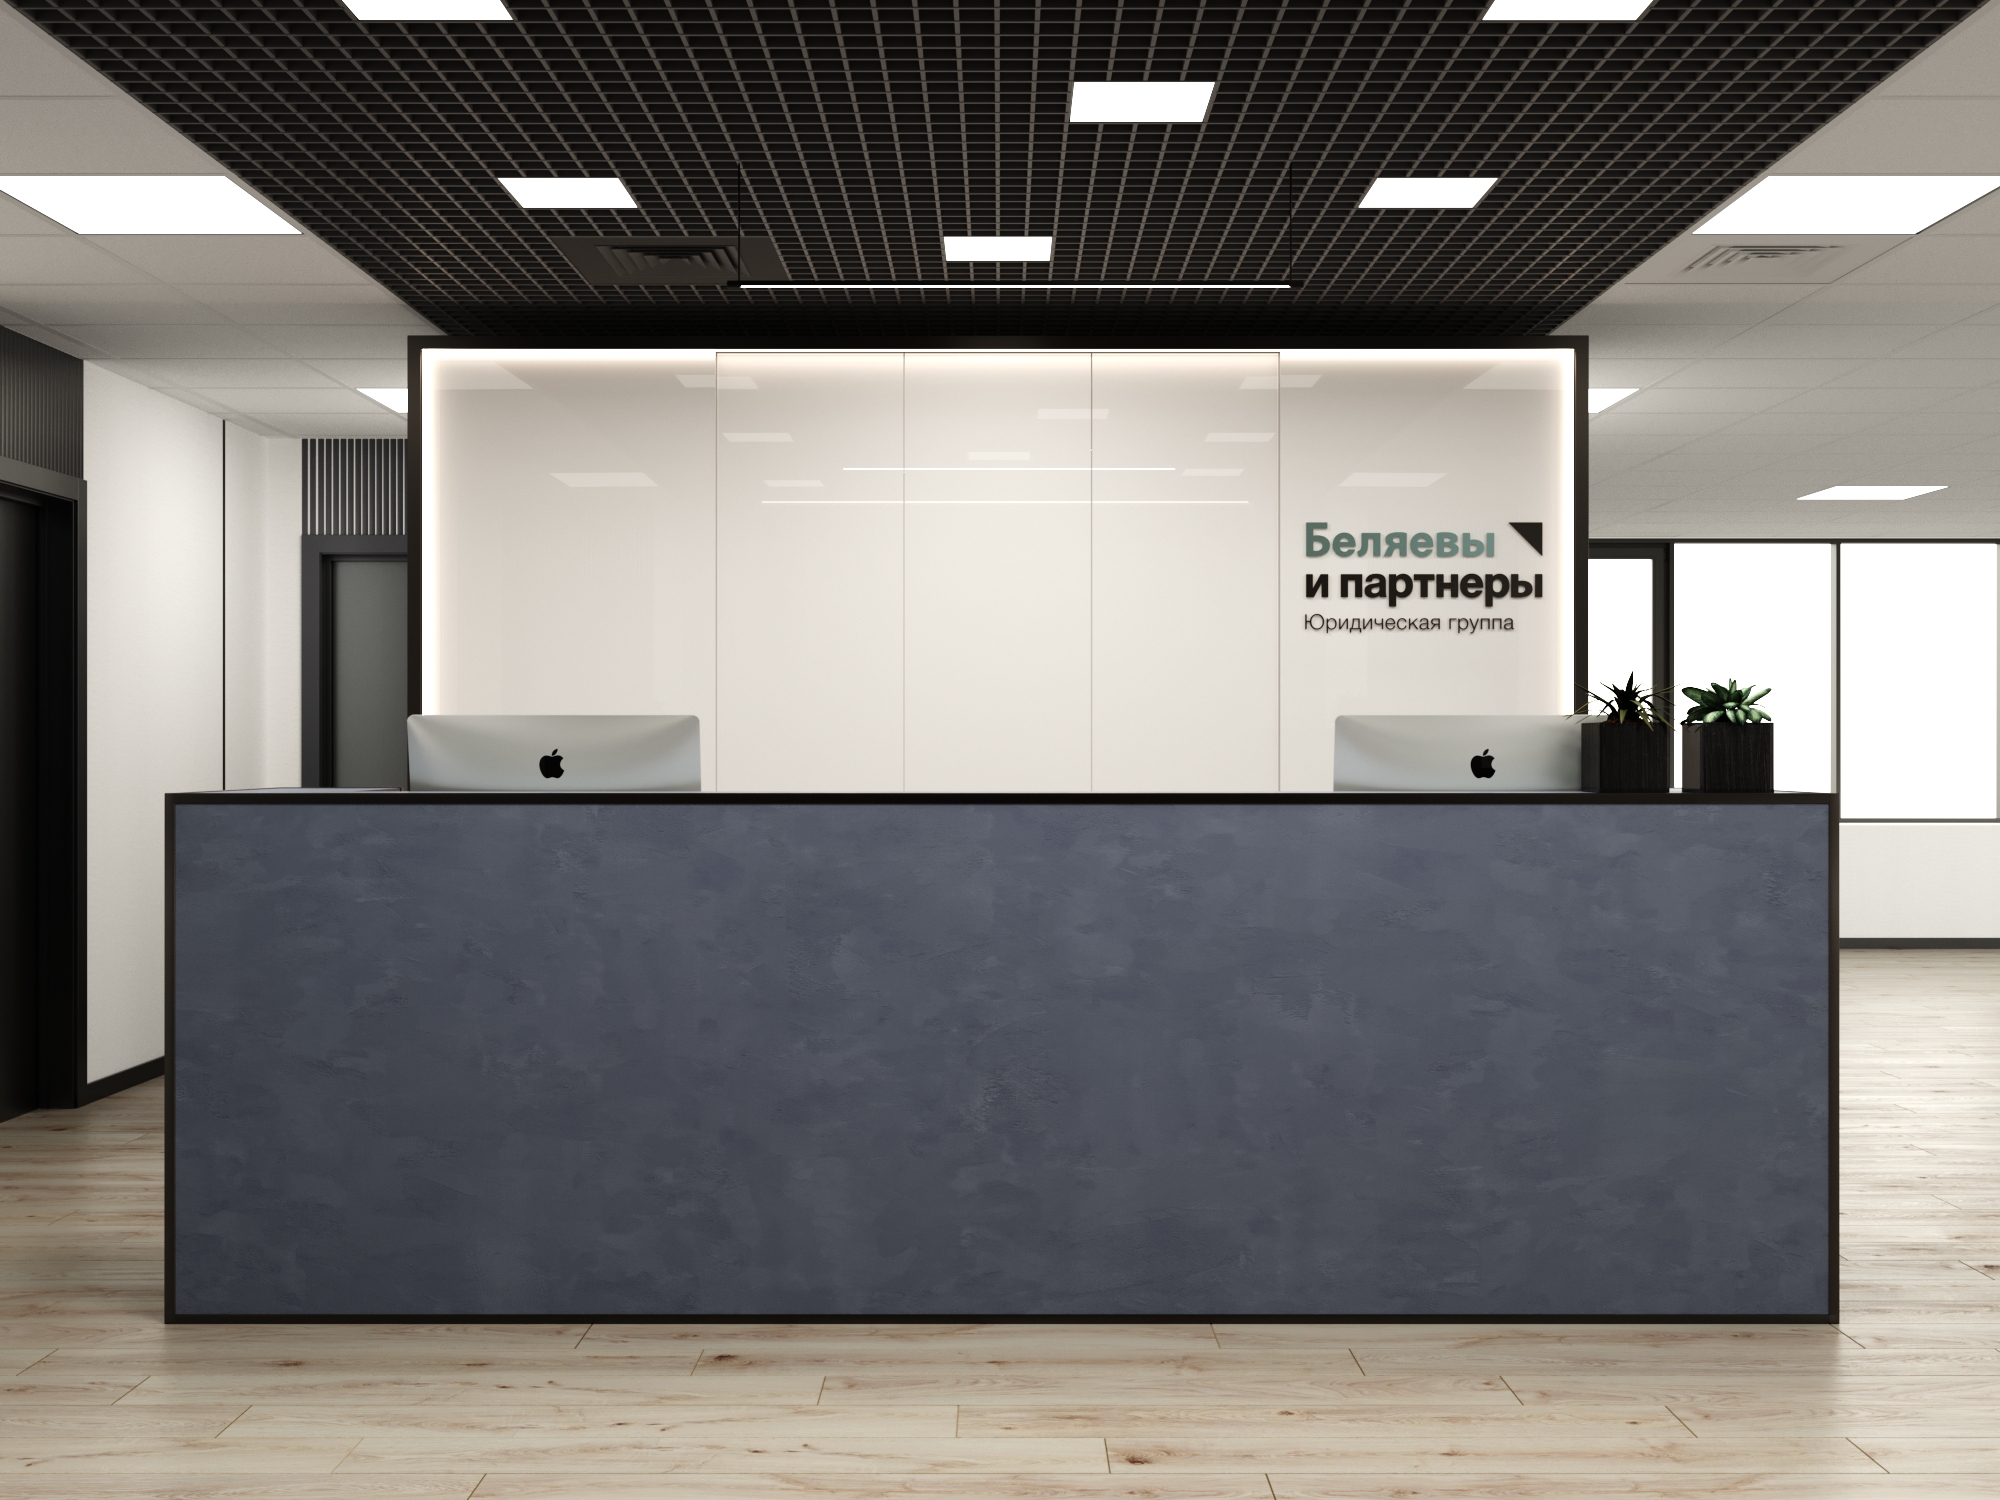 OFFICE RETRO. Дизайн-проект офиса в современном стеле с элементами лофта и ретро 1